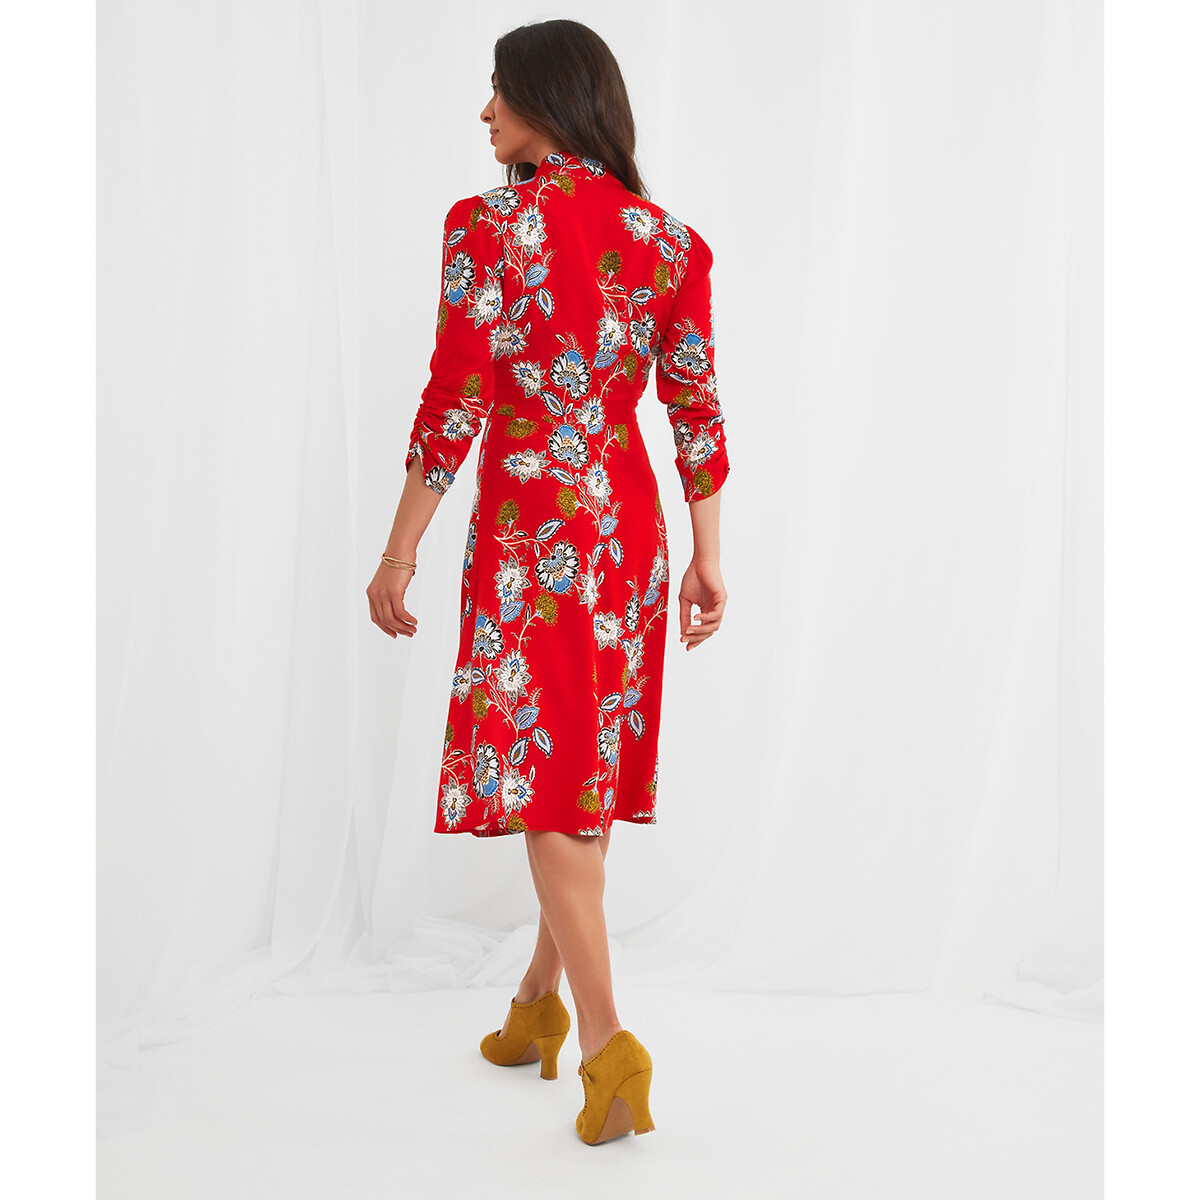 Платье JOE BROWNS Платье С V-образным вырезом цветочный принт 50 красный, размер 50 - фото 3